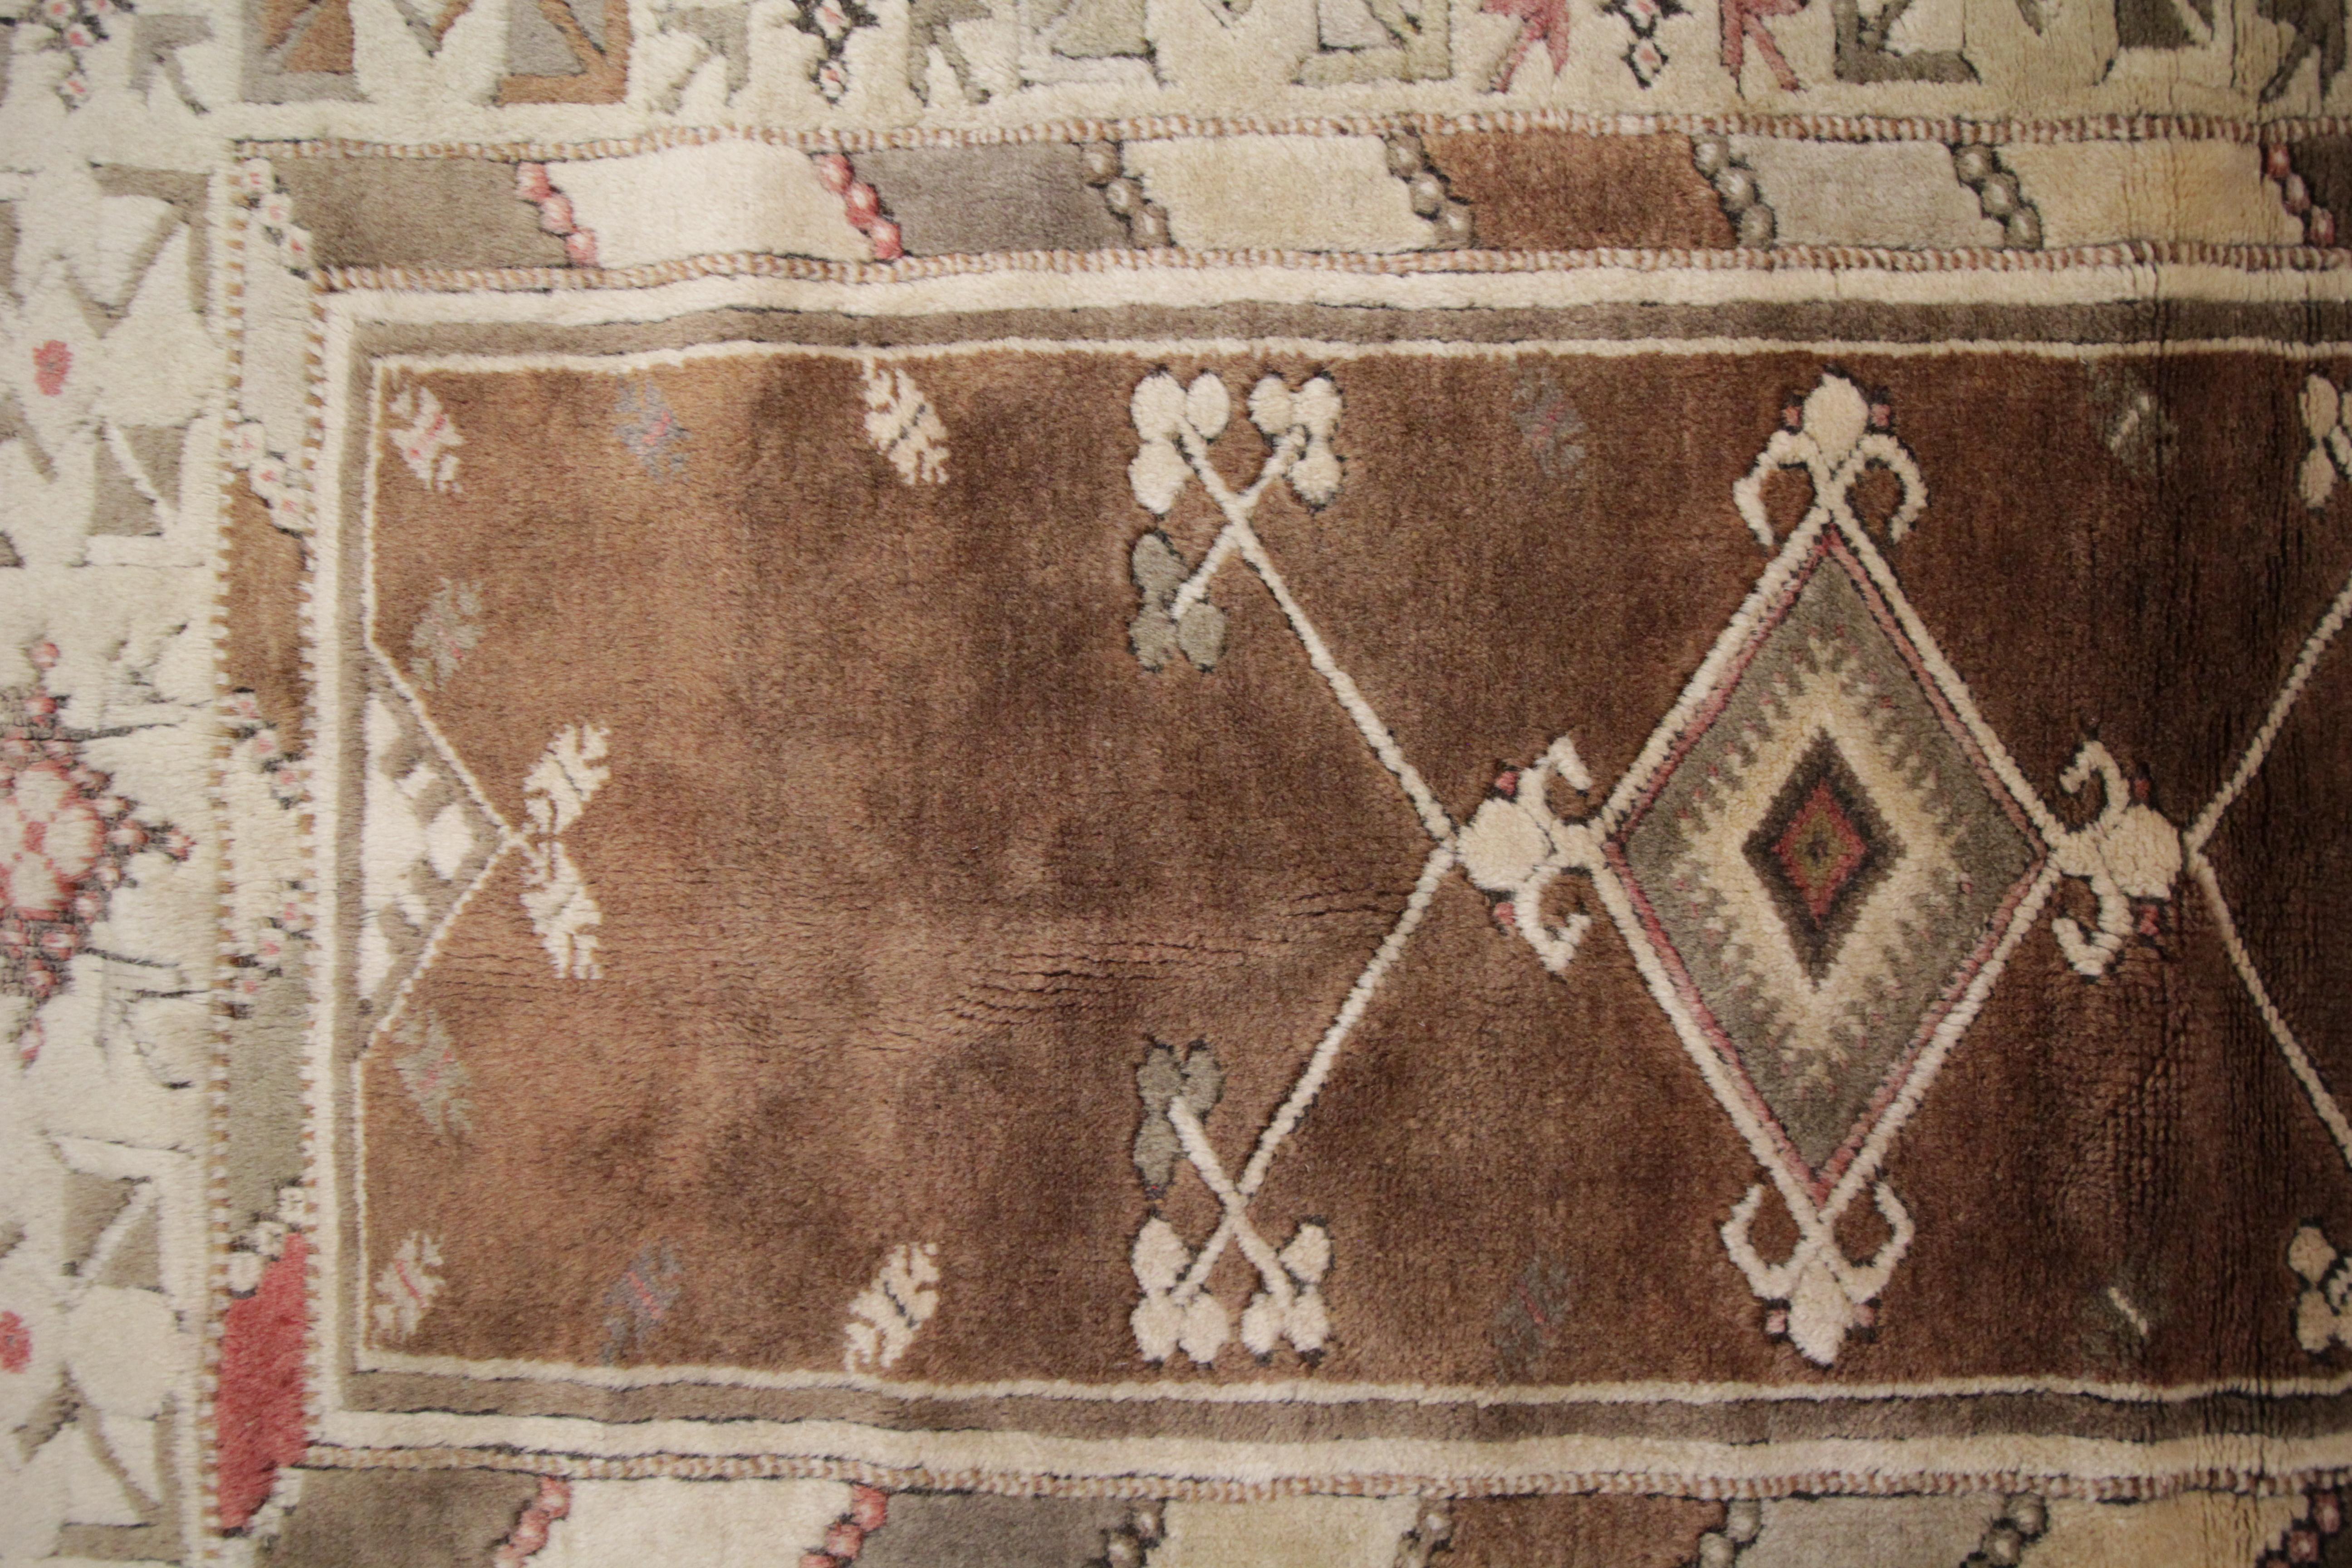 Wool Antique Turkish Rugs, Vintage Rug Milas, Brown Rug, Handmade Carpet  For Sale